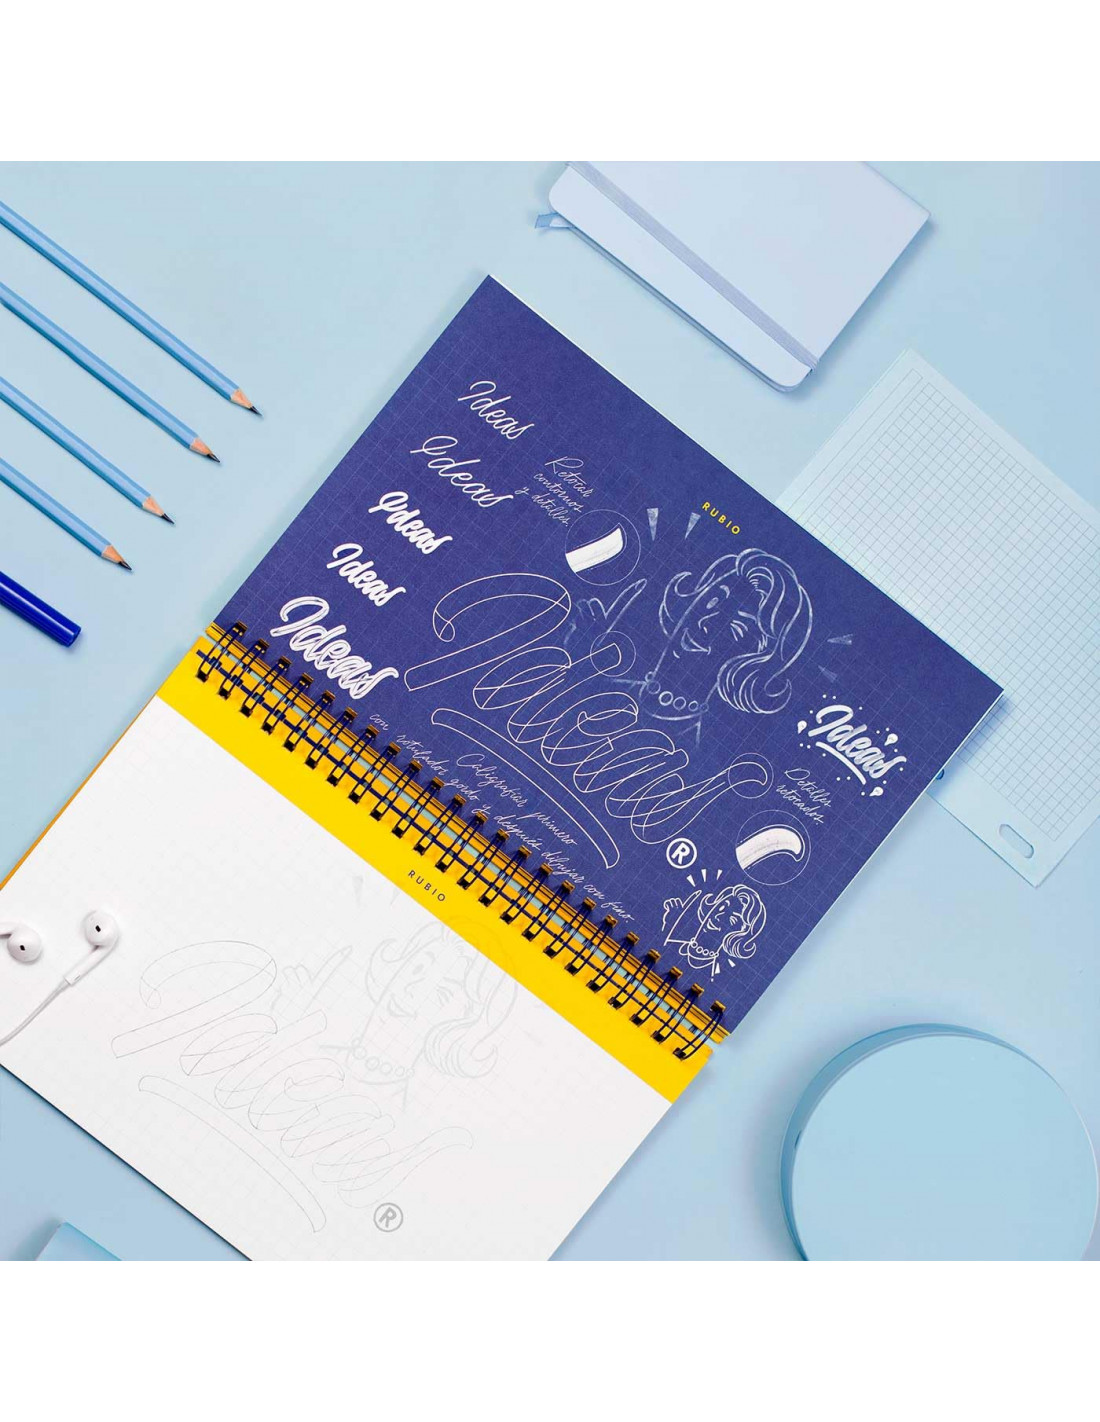 RUBIO lanza su cuaderno más descarado para los amantes del lettering –  Graficatessen